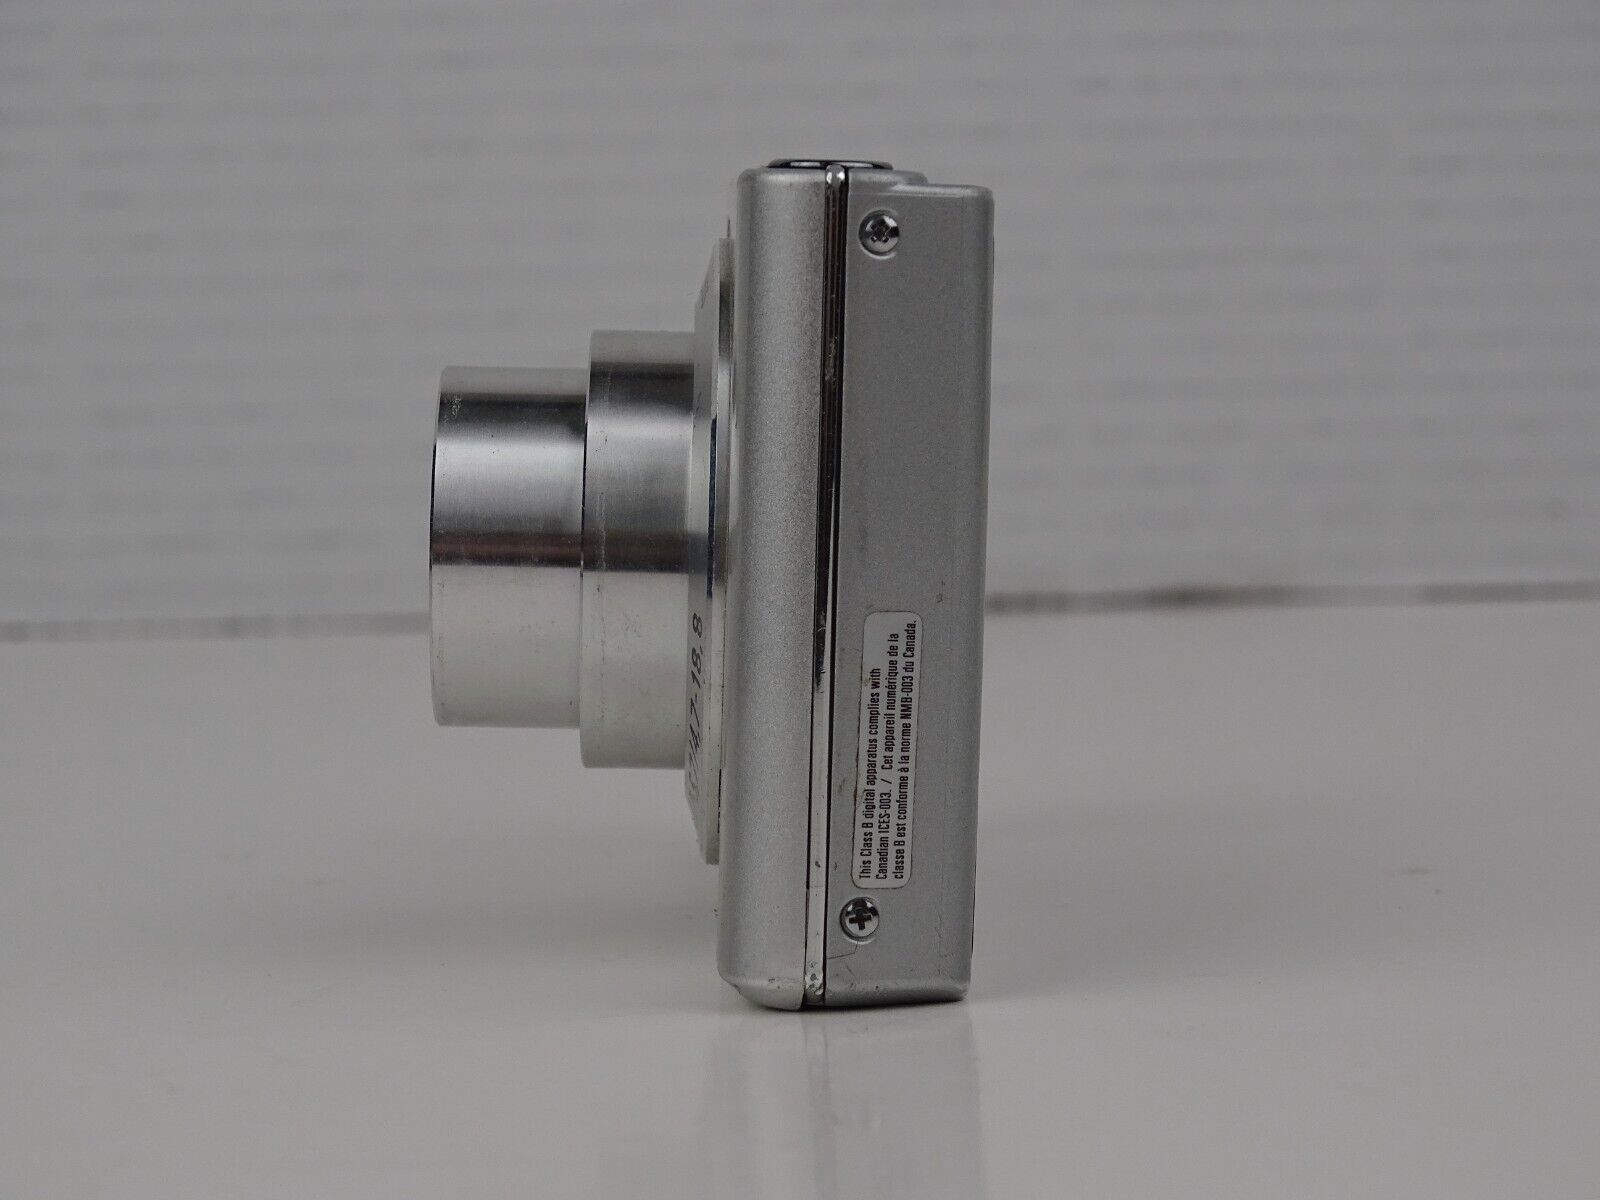 Sony Cyber-shot DSC-W330 14.1MP Digital Camera Carl Zeiss 4x Zoom READ Defects 